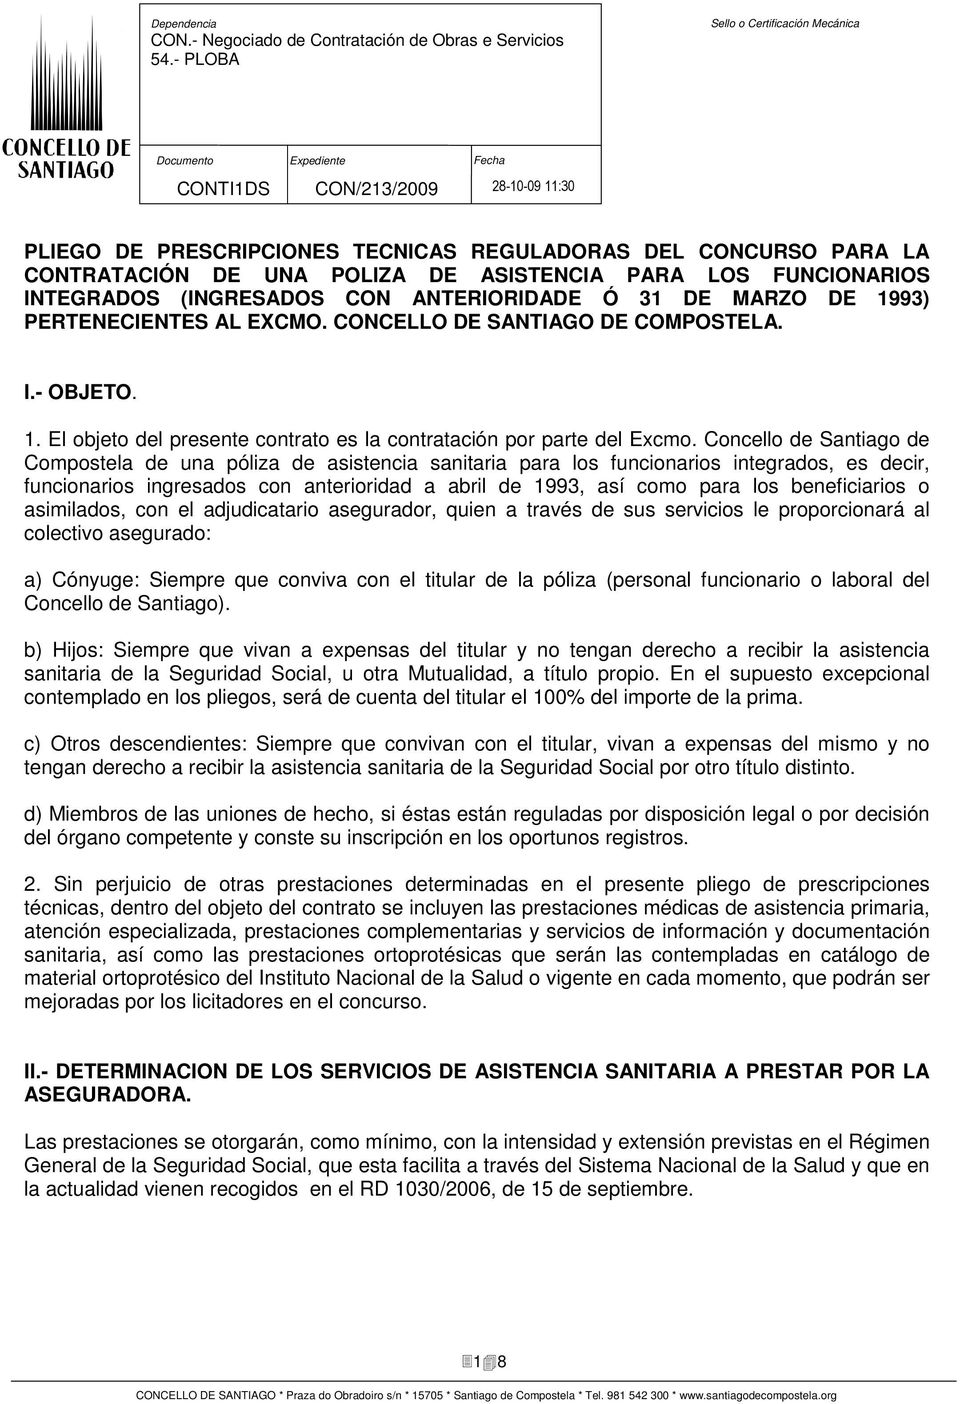 Concello de Santiago de Compostela de una póliza de asistencia sanitaria para los funcionarios integrados, es decir, funcionarios ingresados con anterioridad a abril de 1993, así como para los